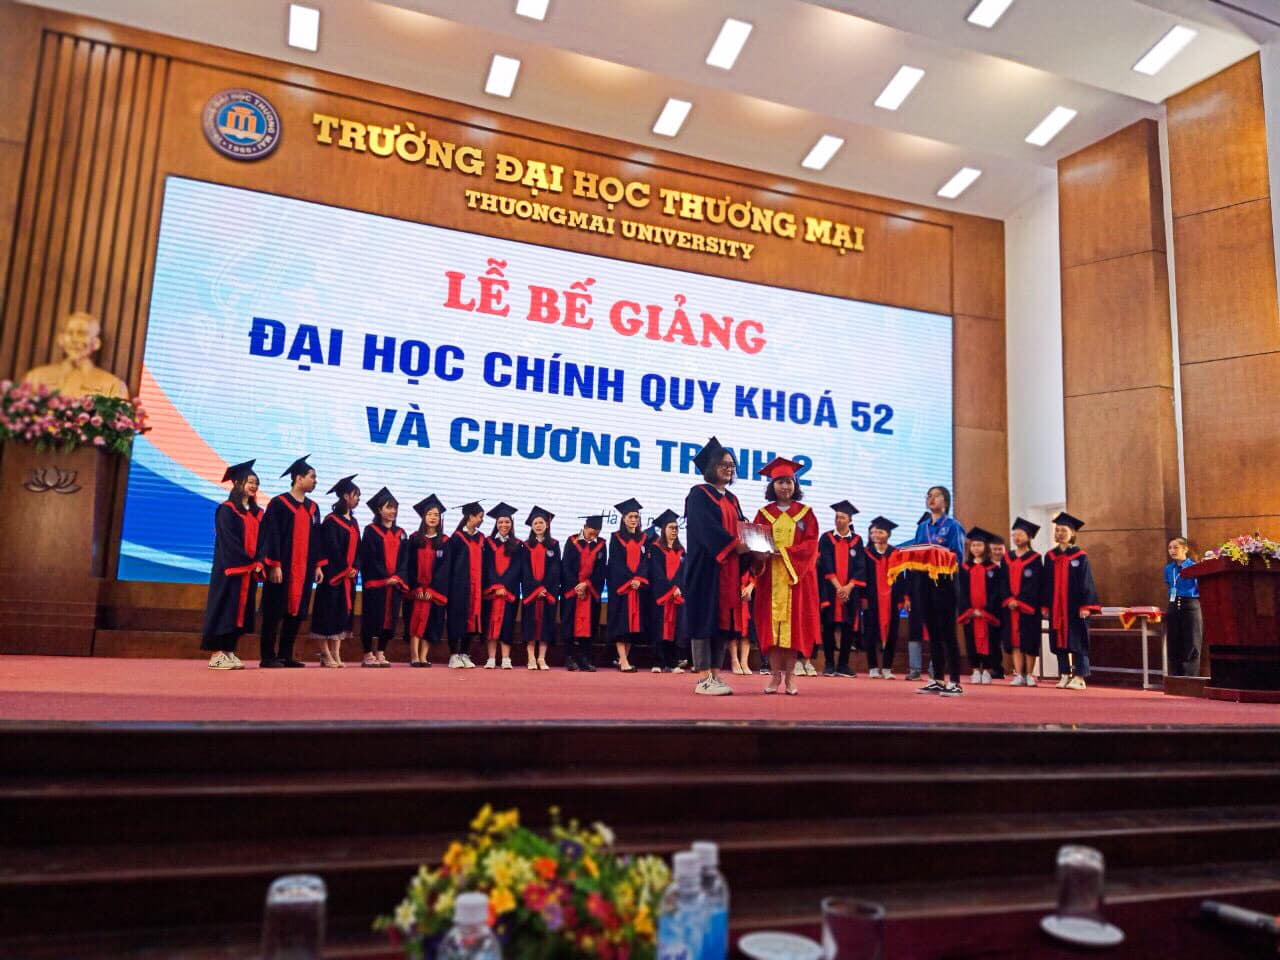 Lễ Bế giảng và Trao bằng tốt nghiệp cho sinh viên Đại học chính quy khóa 52 và Chương trình 2